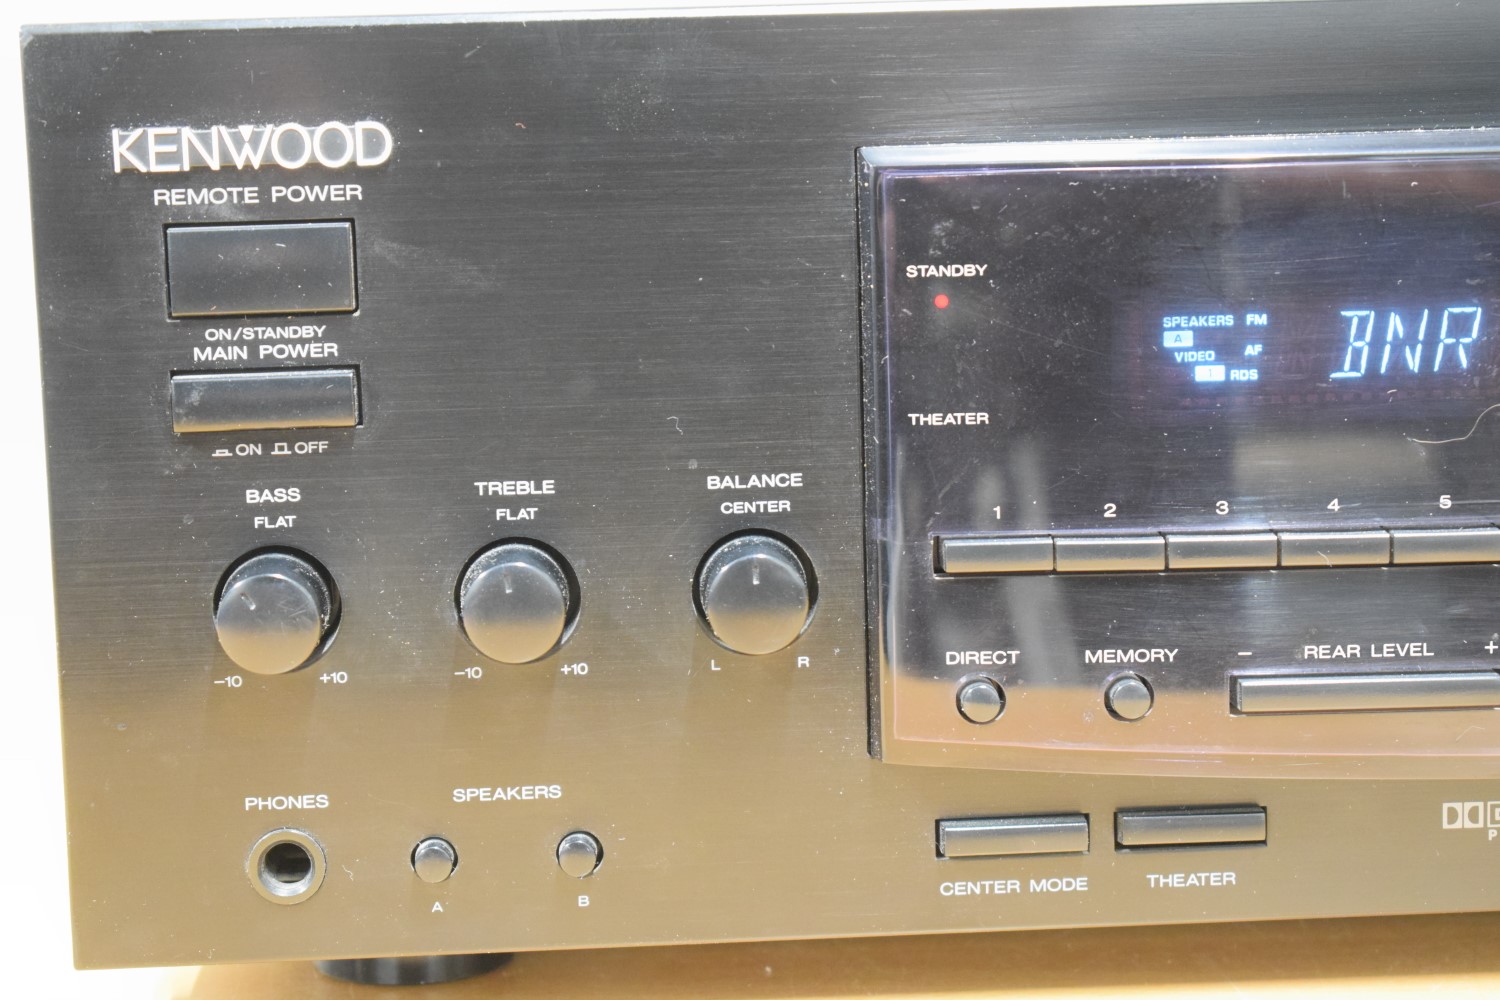 Kenwood KR-V6080 Stereo Receiver